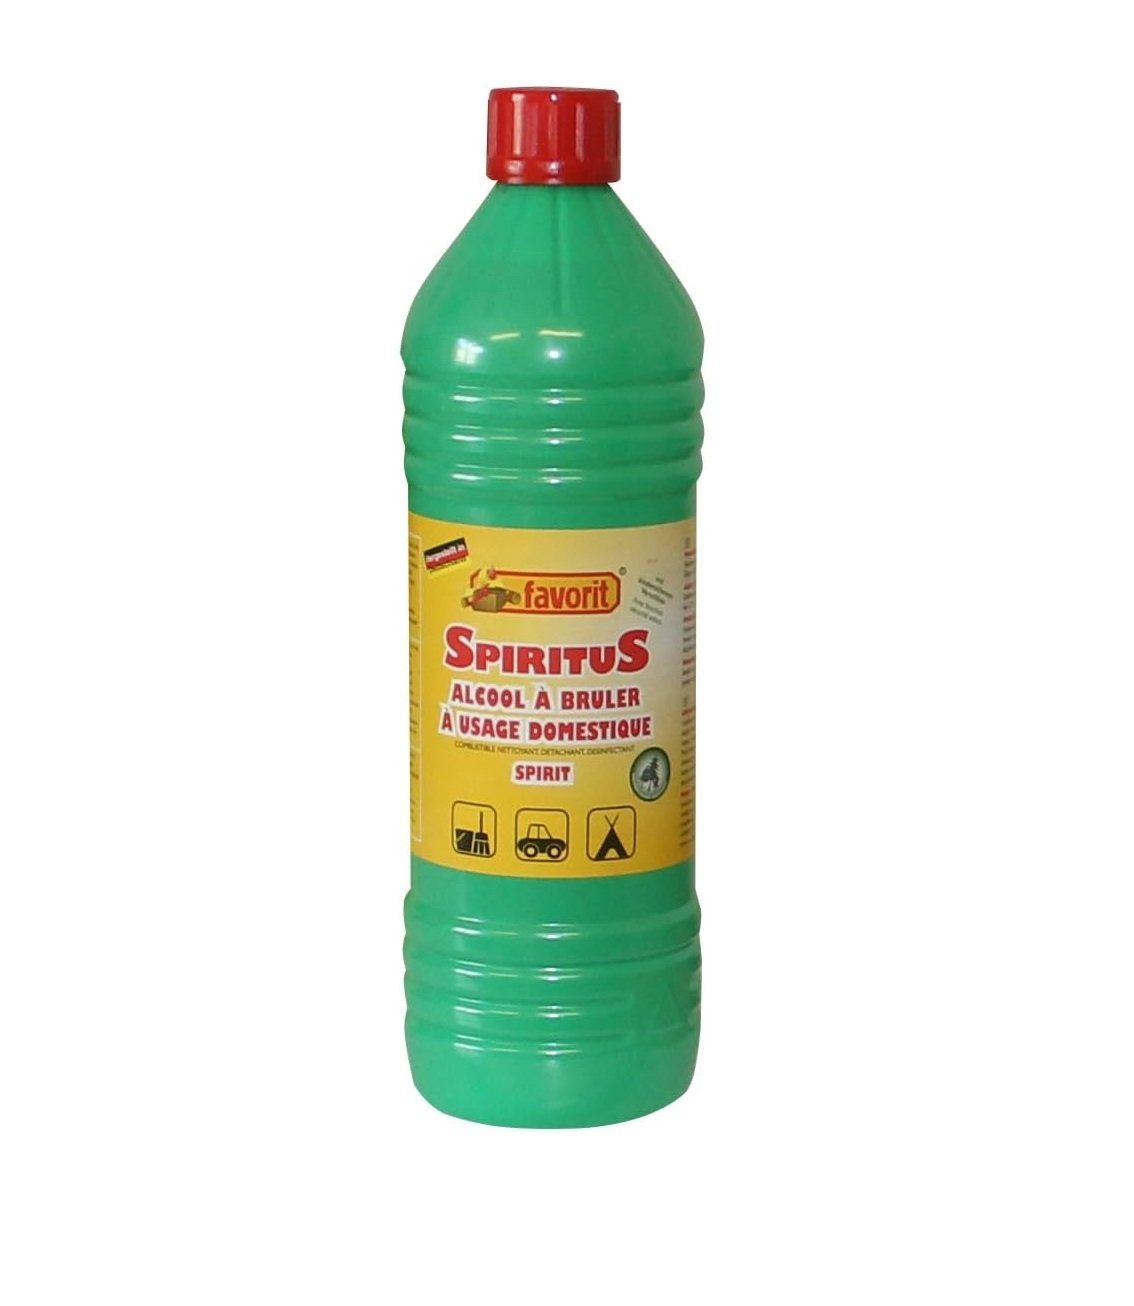 favorit Gartenfackel Spiritus, Inhalt 1 Liter, kindersichere Flasche